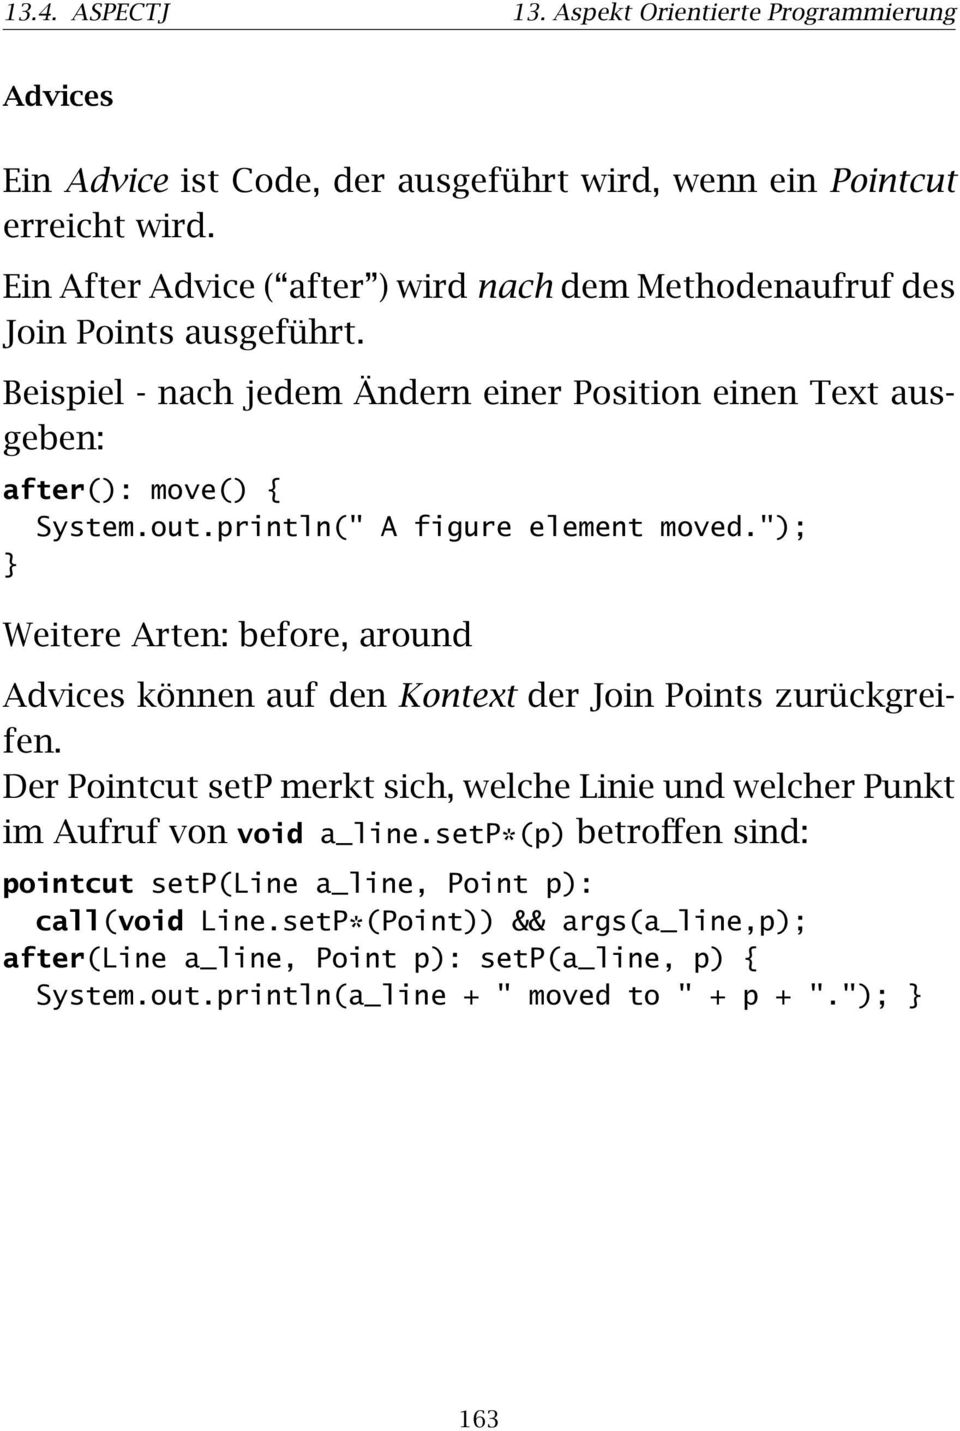 println(" A figure element moved."); Weitere Arten: before, around Advices können auf den Kontext der Join Points zurückgreifen.